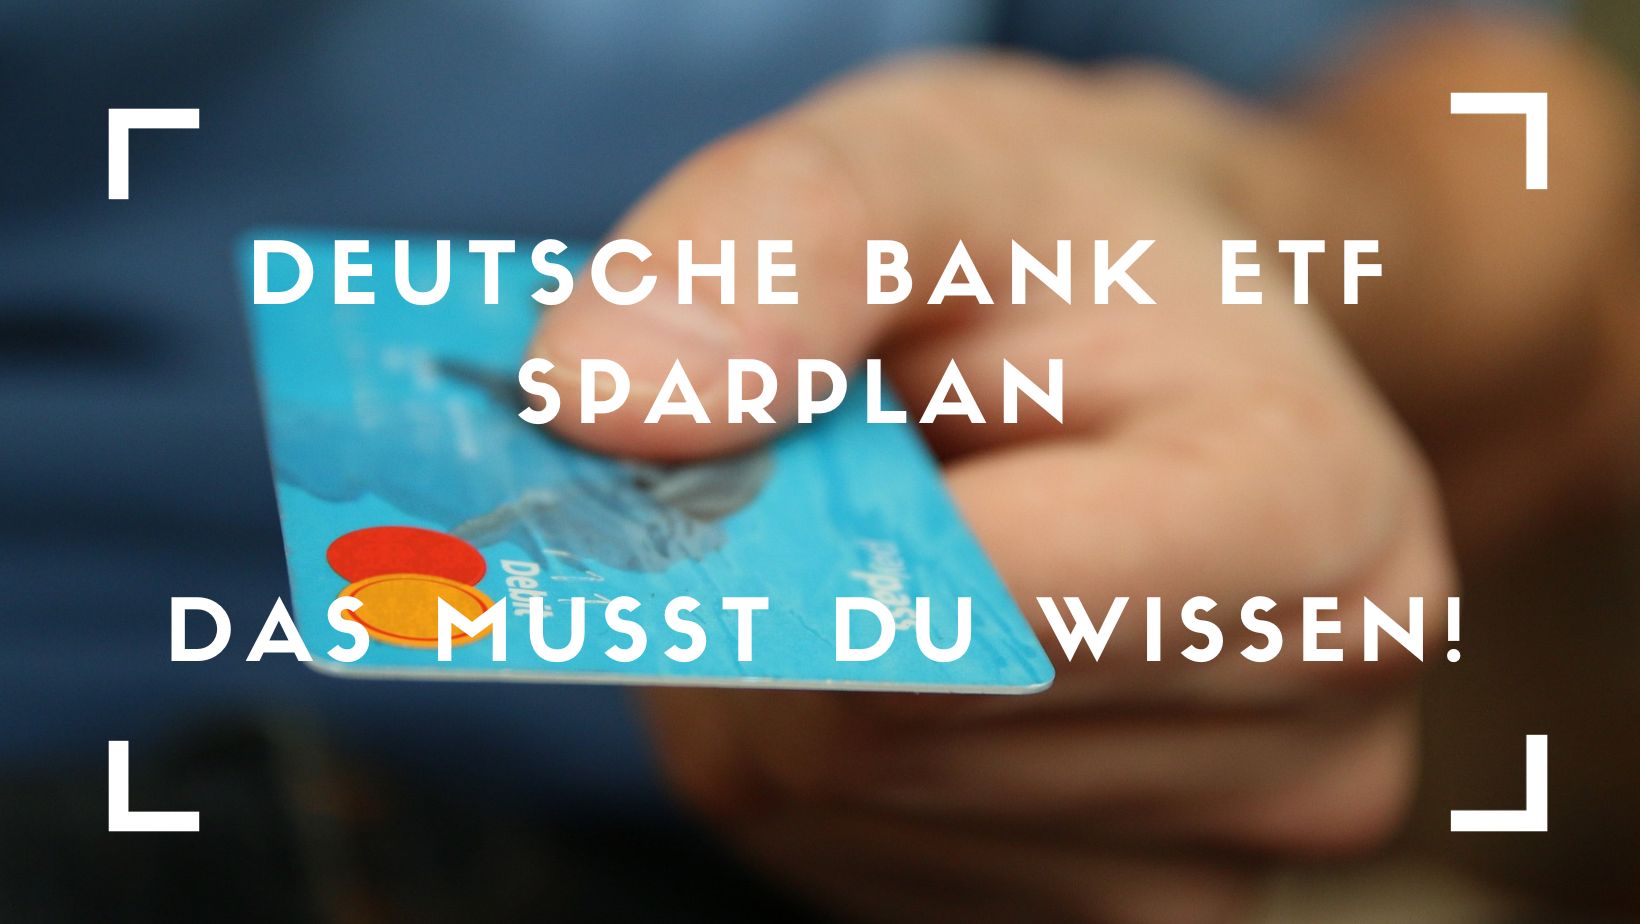 Titelbild zum Beitrag: "Deutsche Bank ETF Sparplan - Das musst du wissen!"